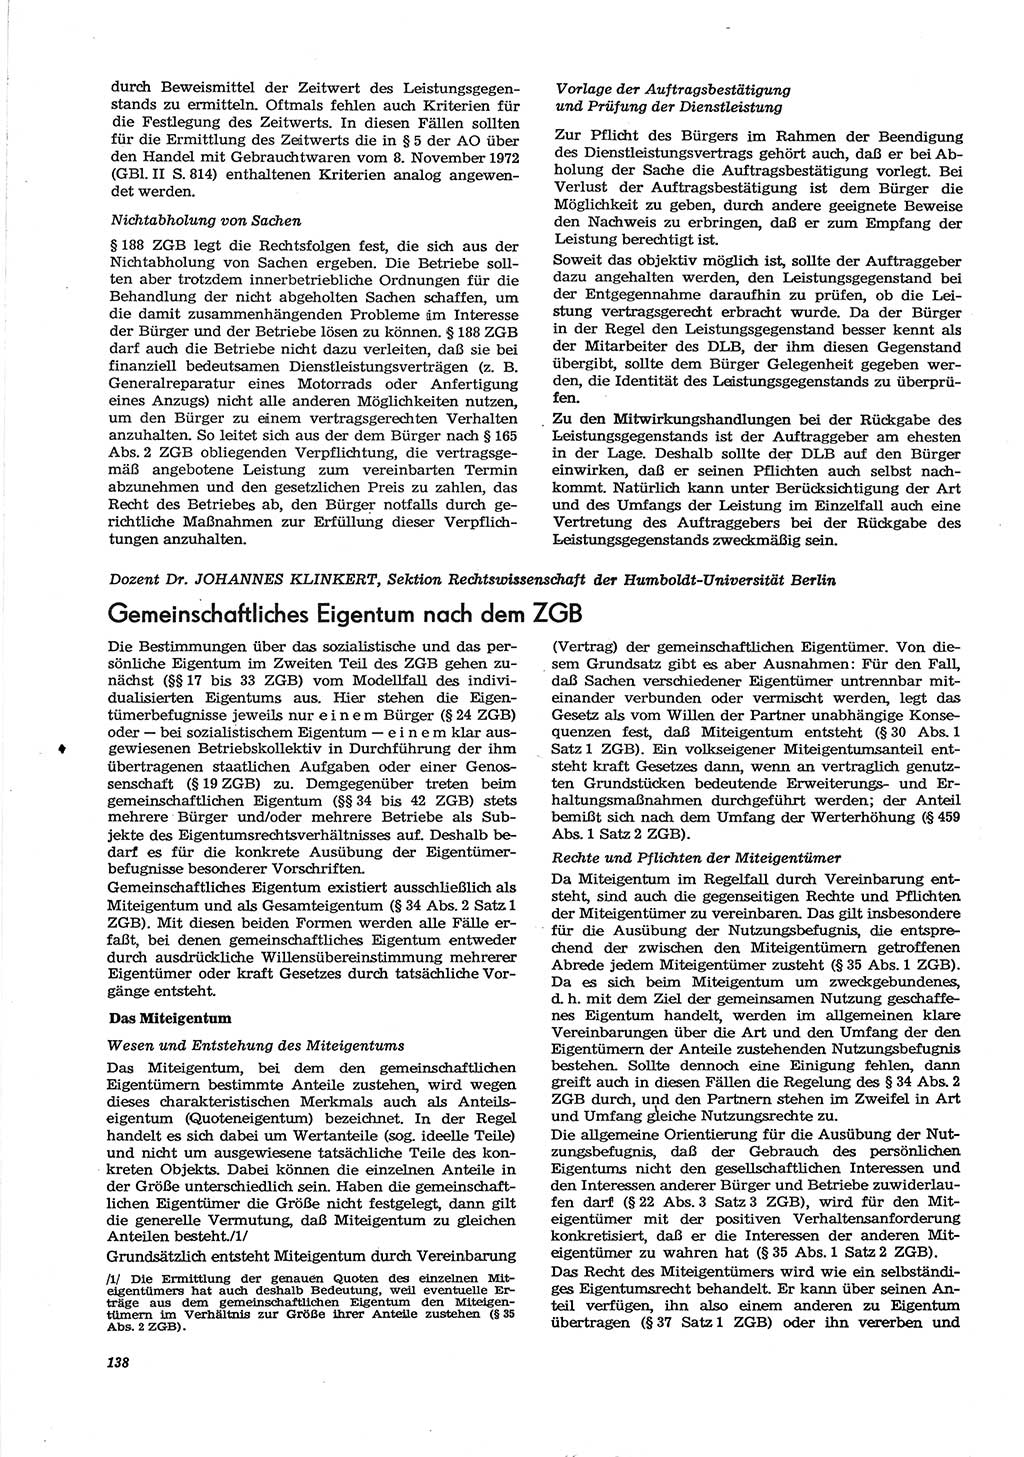 Neue Justiz (NJ), Zeitschrift für Recht und Rechtswissenschaft [Deutsche Demokratische Republik (DDR)], 30. Jahrgang 1976, Seite 138 (NJ DDR 1976, S. 138)